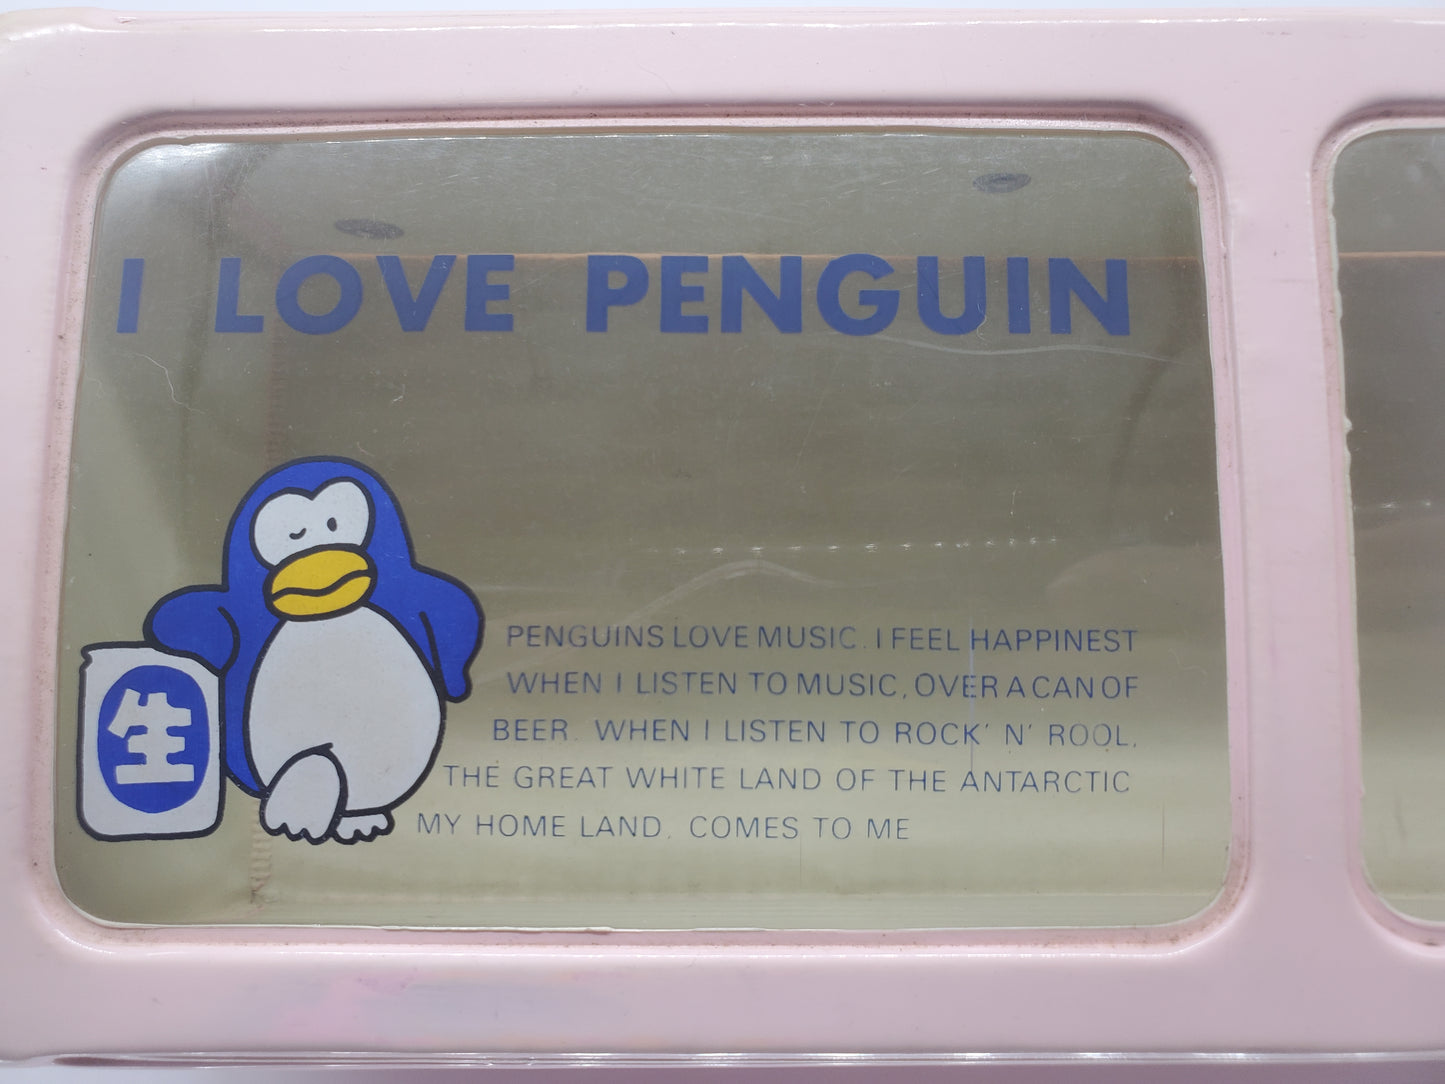 Suntory Penguin Cassette Box